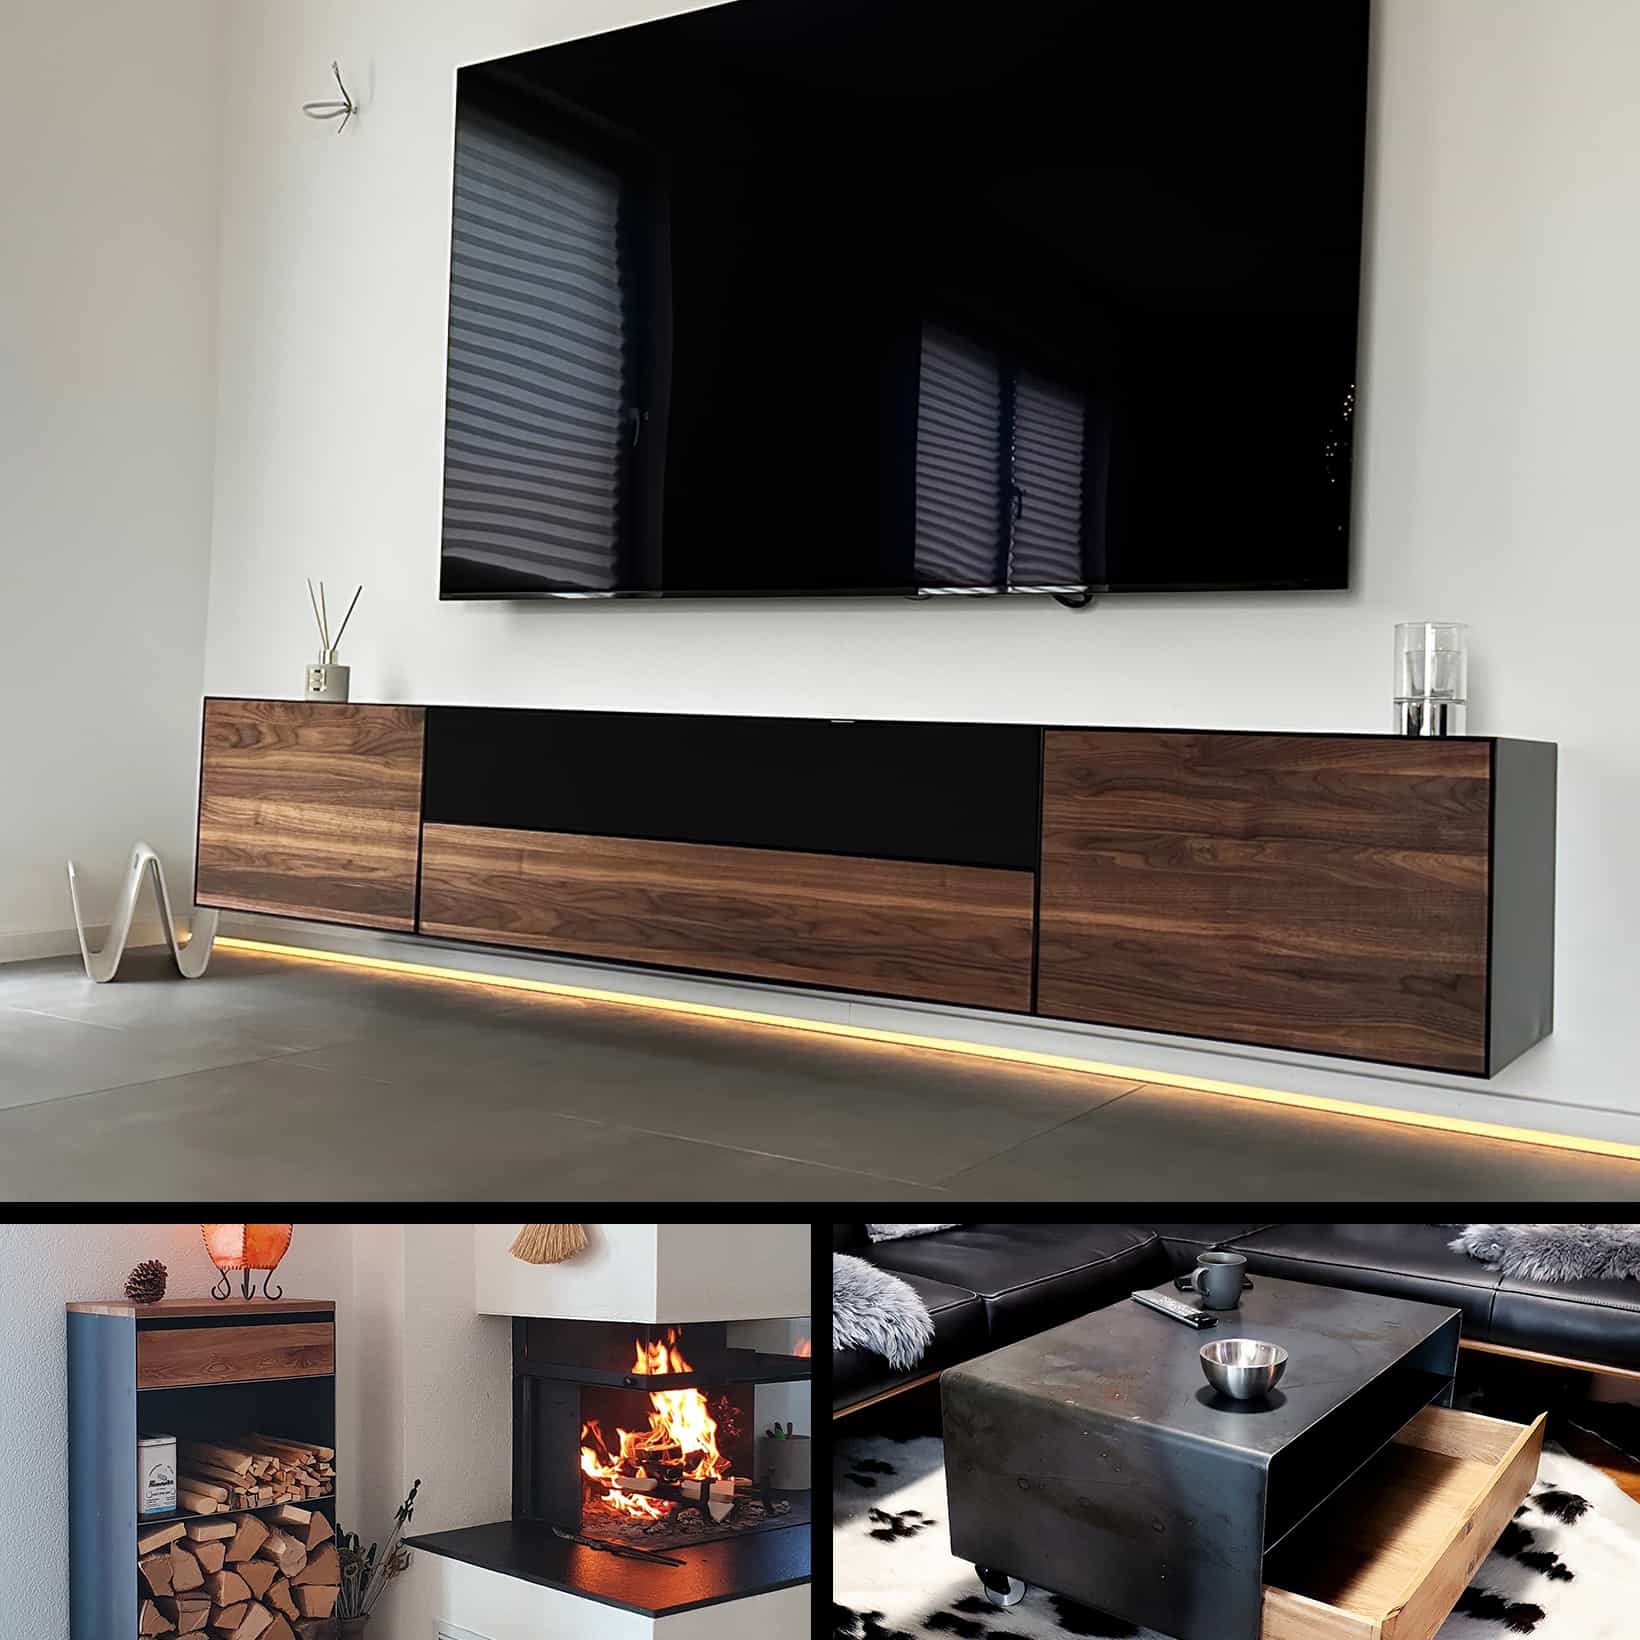 stahlzart-moebel-tisch-couchtisch-sideboard-regal-tv-board-lowboard-haengend-kaminholzregal-weiss-schwarz-grau-holz-eiche-metall-modern-design-nussbaum-wohnzimmer-schlafzimmer-flur